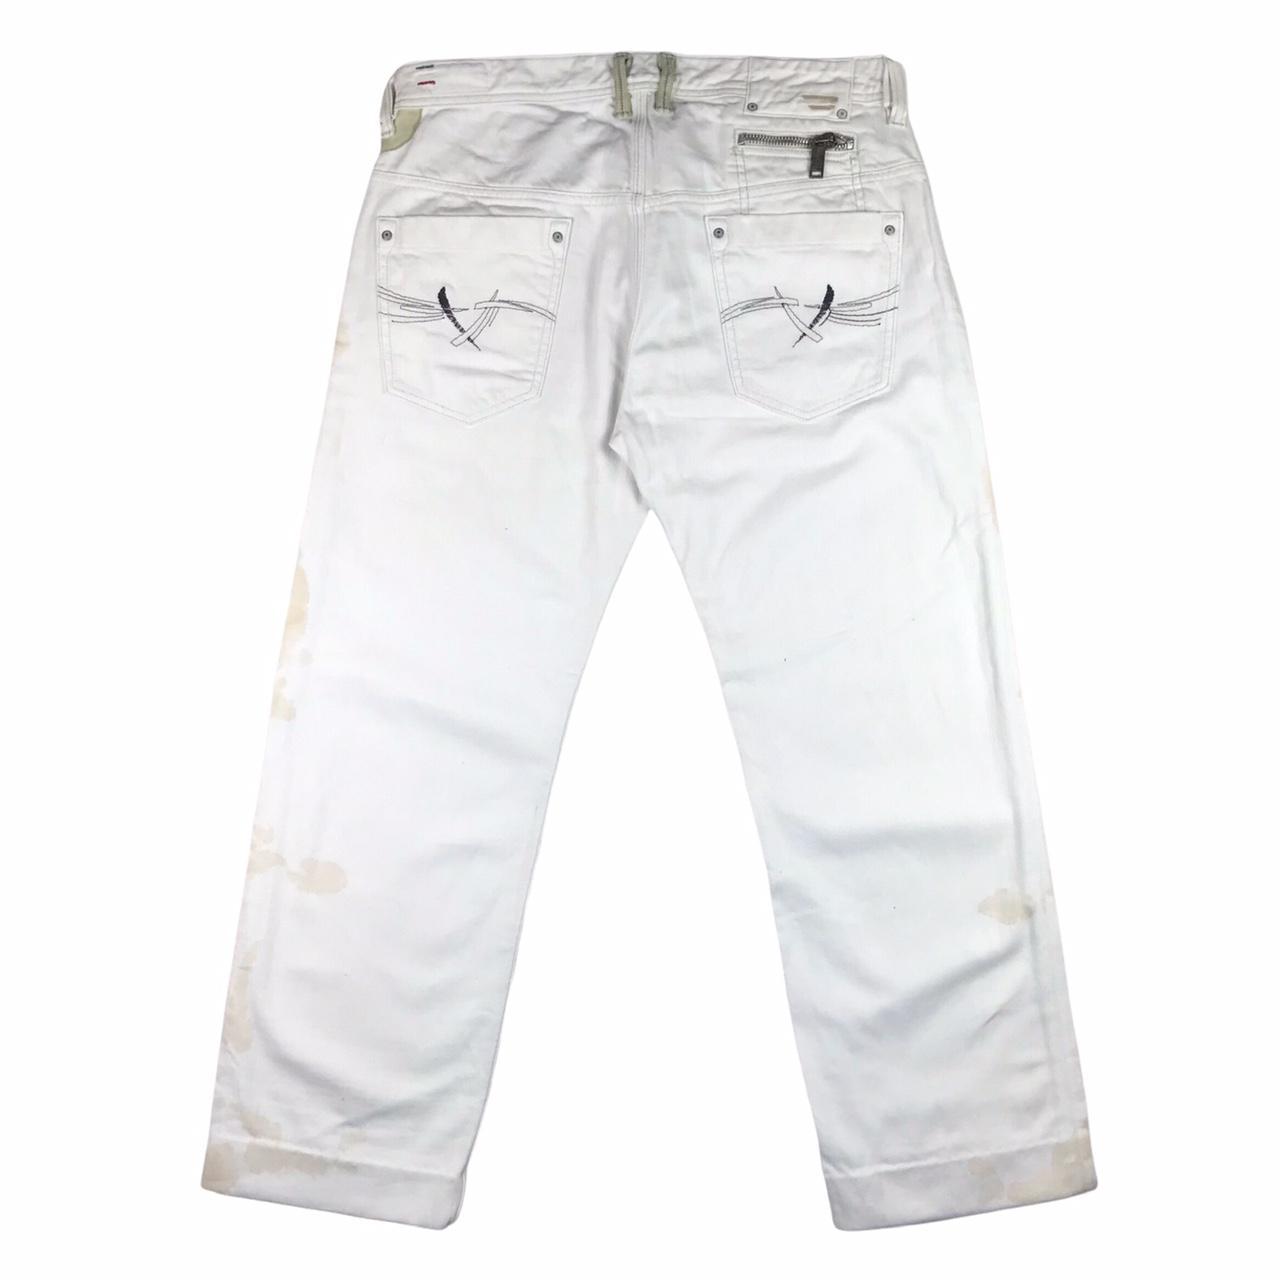 DIESEL Mens Onijo Slim Jeans W34 L28 White Cotton... - Depop